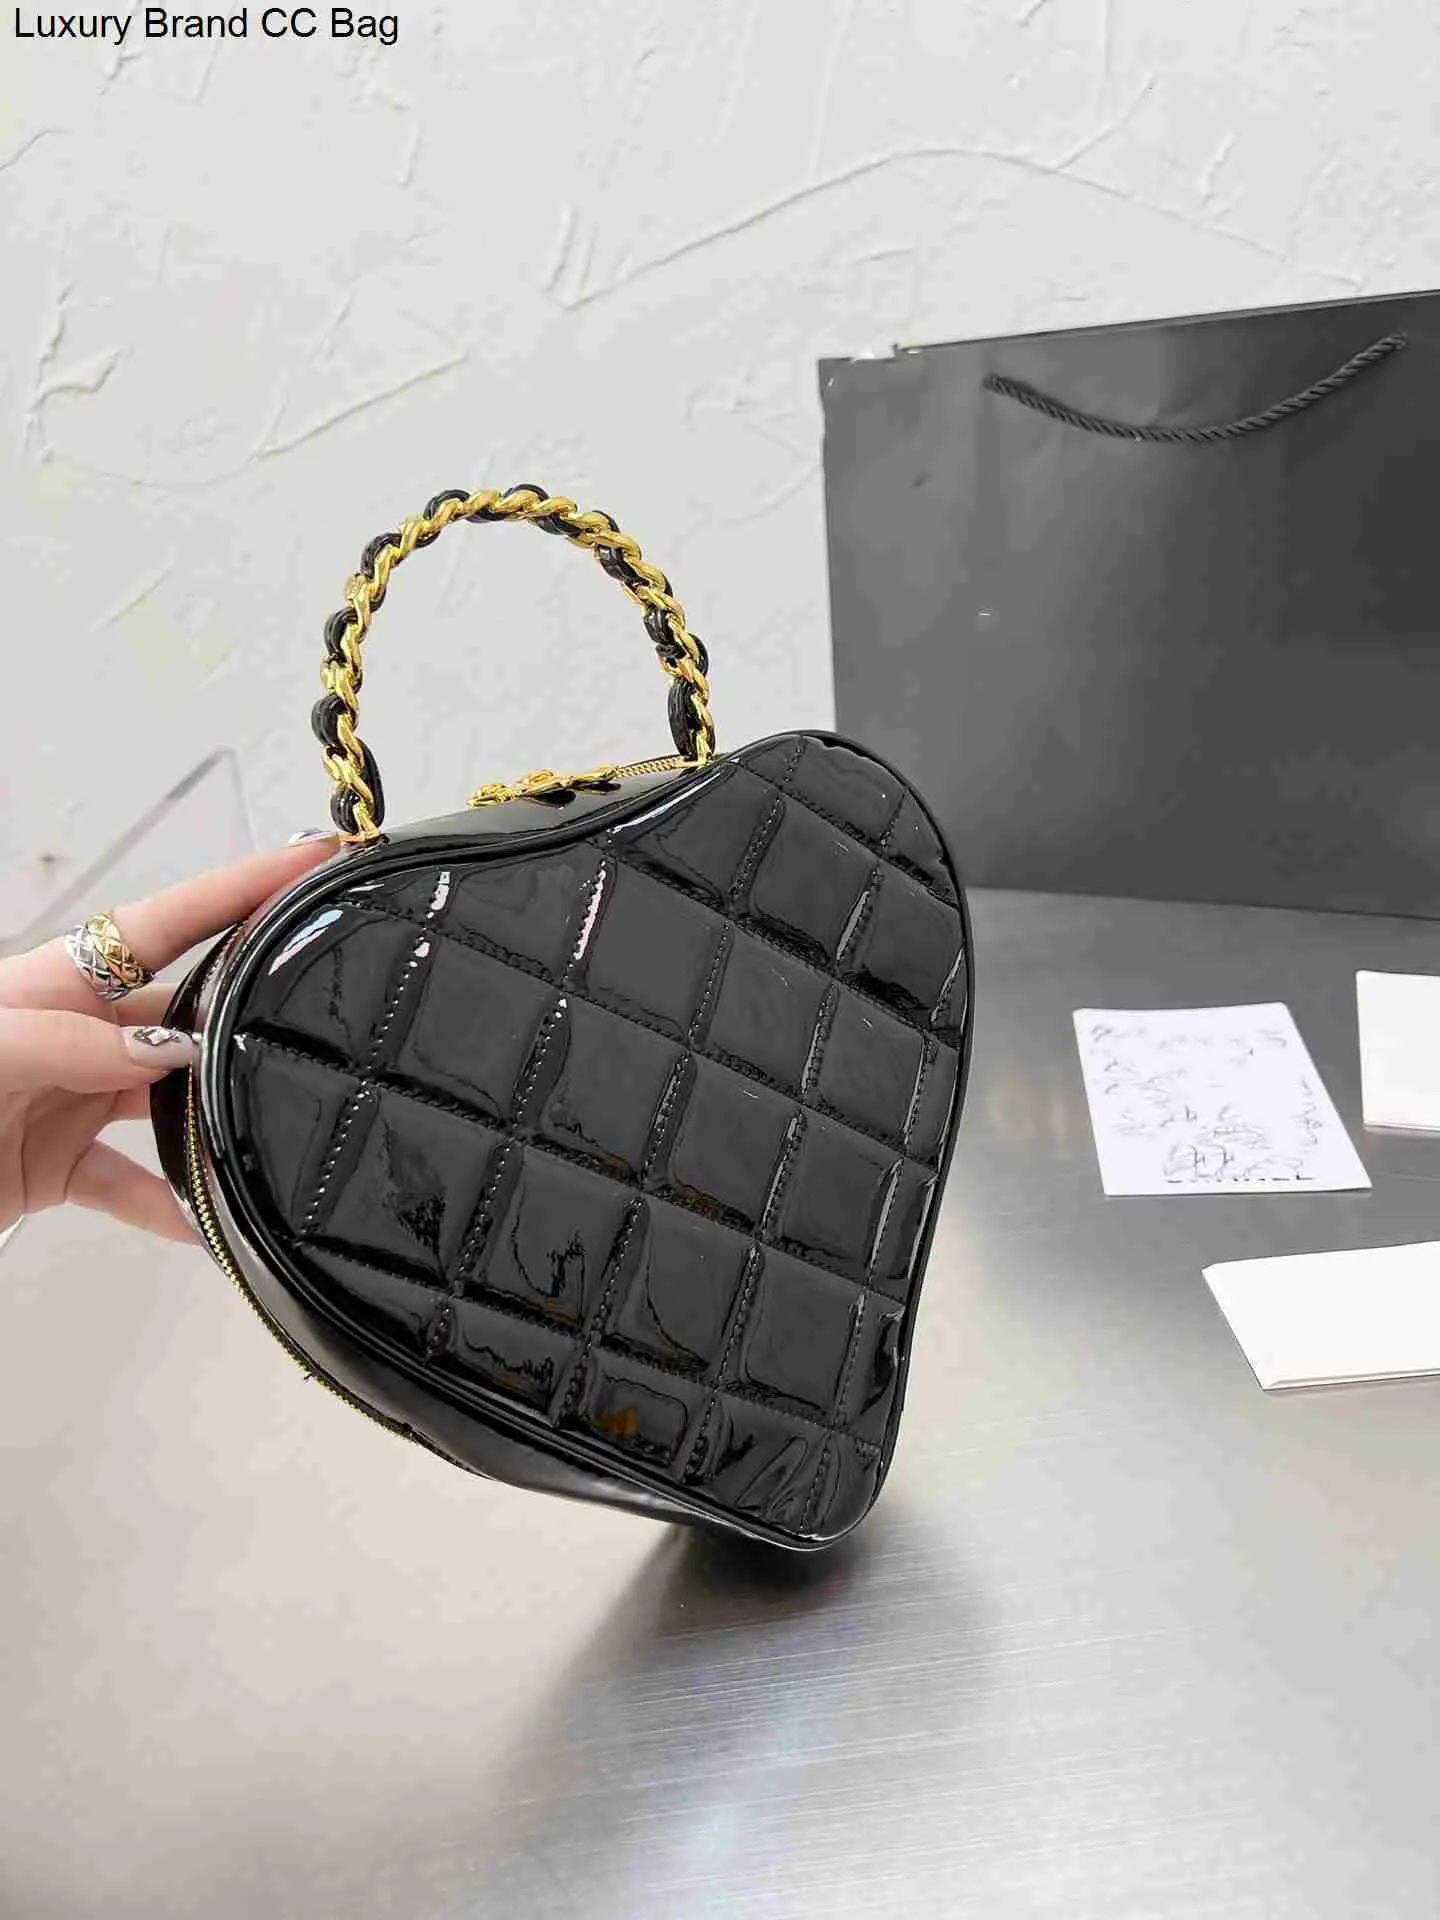 CC Evening Bags Großhandel hochwertige Crossbody Designer -Taschen Luxus Mode Umhängetasche Frauen große Liebesbeutel Damen Abend Brieftasche